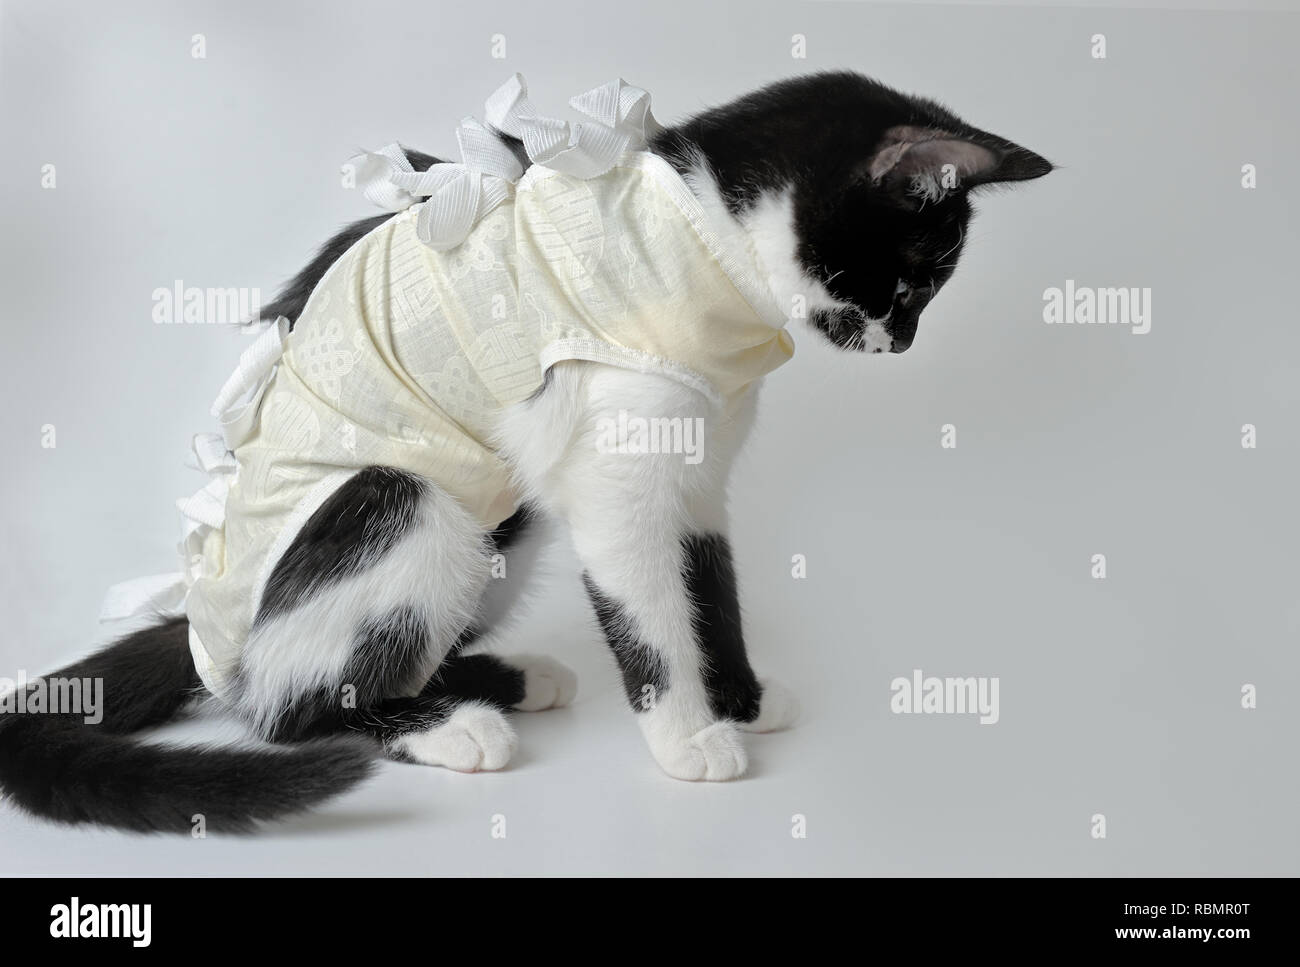 Pansement postopératoire sur un chaton noir et blanc pour protéger après incision chirurgicale ou une plaie non infectée. Soin d'un animal après une opération de chirurgie. Banque D'Images